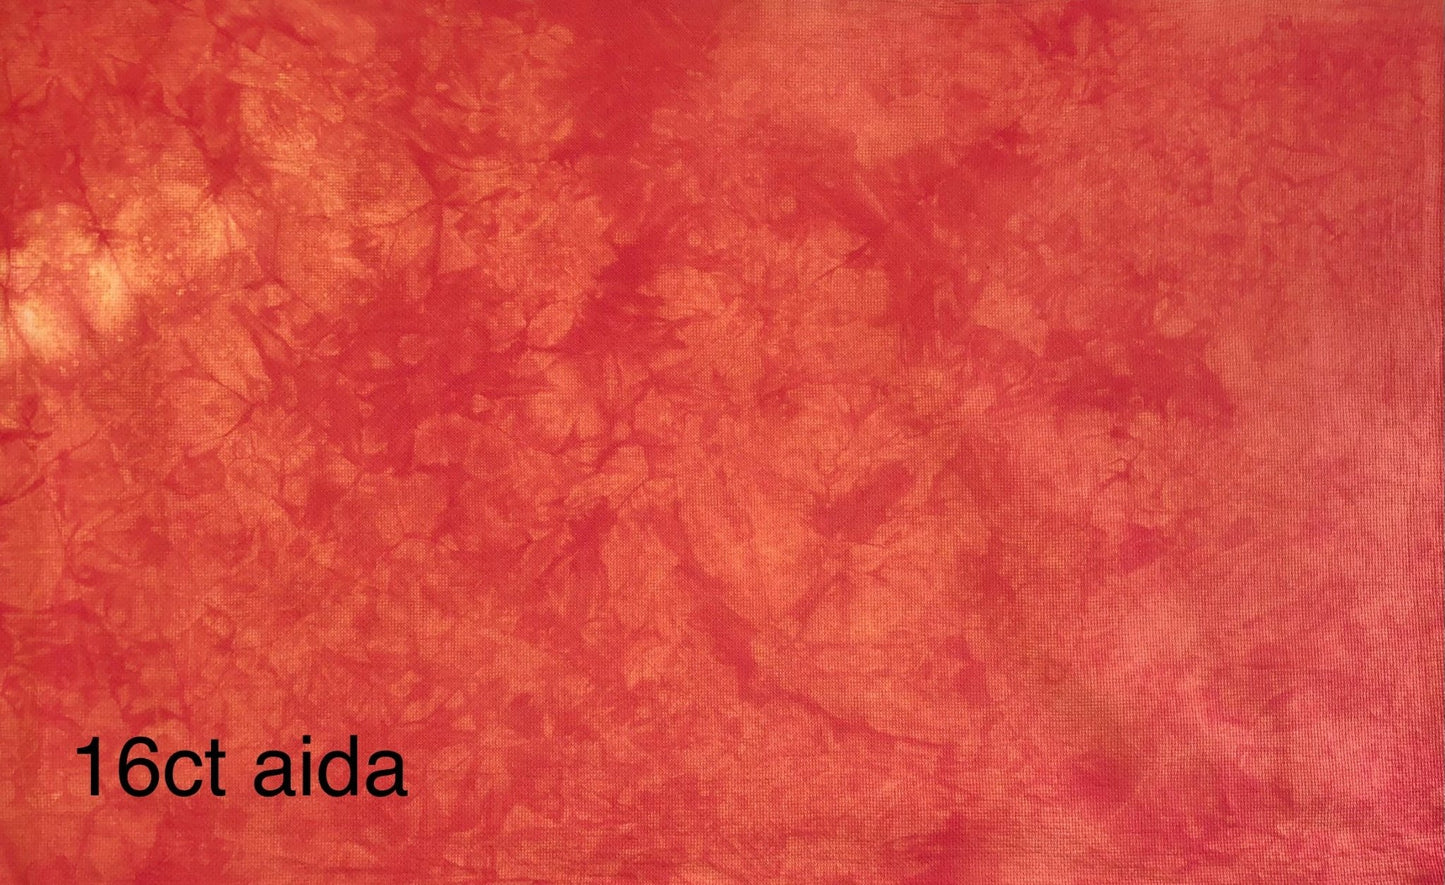 Aida - Poppy Fields - Dyeing for Cross Stitch